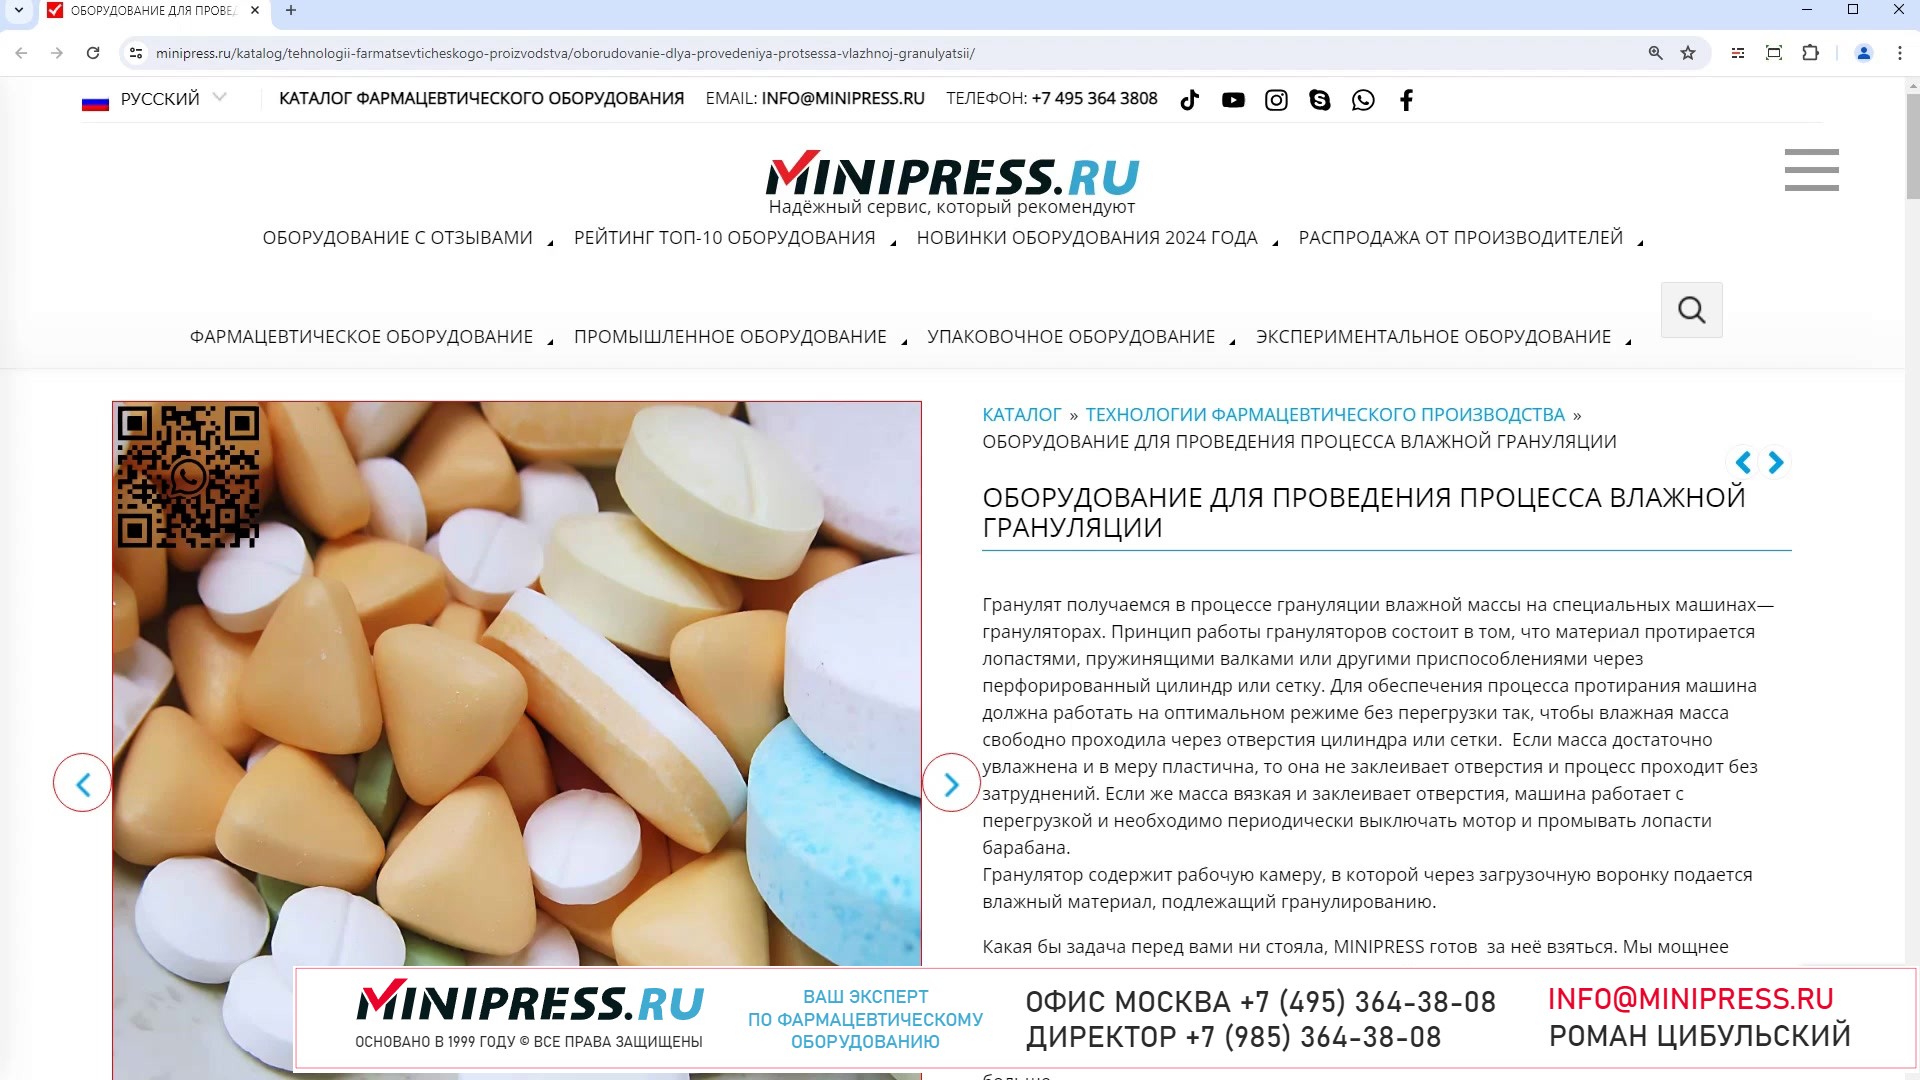 Minipress.ru Оборудование для проведения процесса влажной грануляции